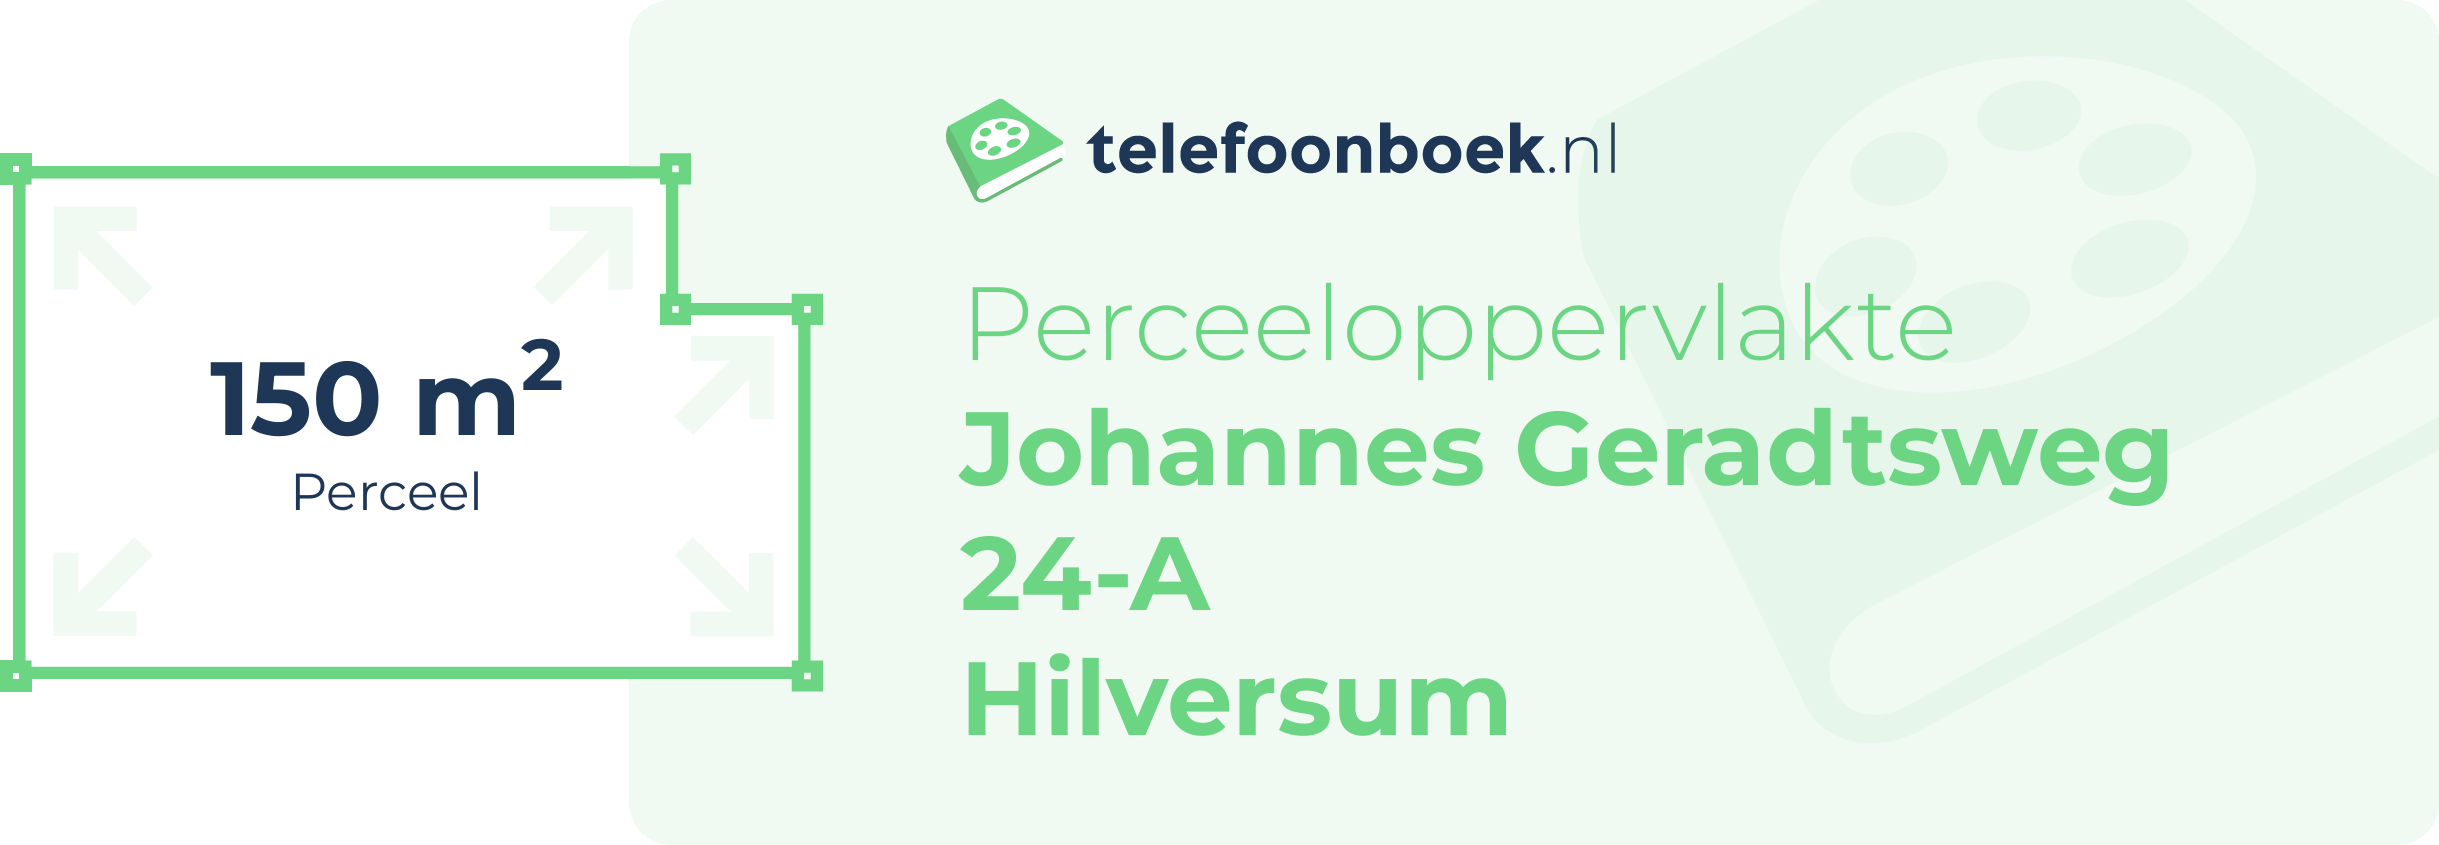 Perceeloppervlakte Johannes Geradtsweg 24-A Hilversum